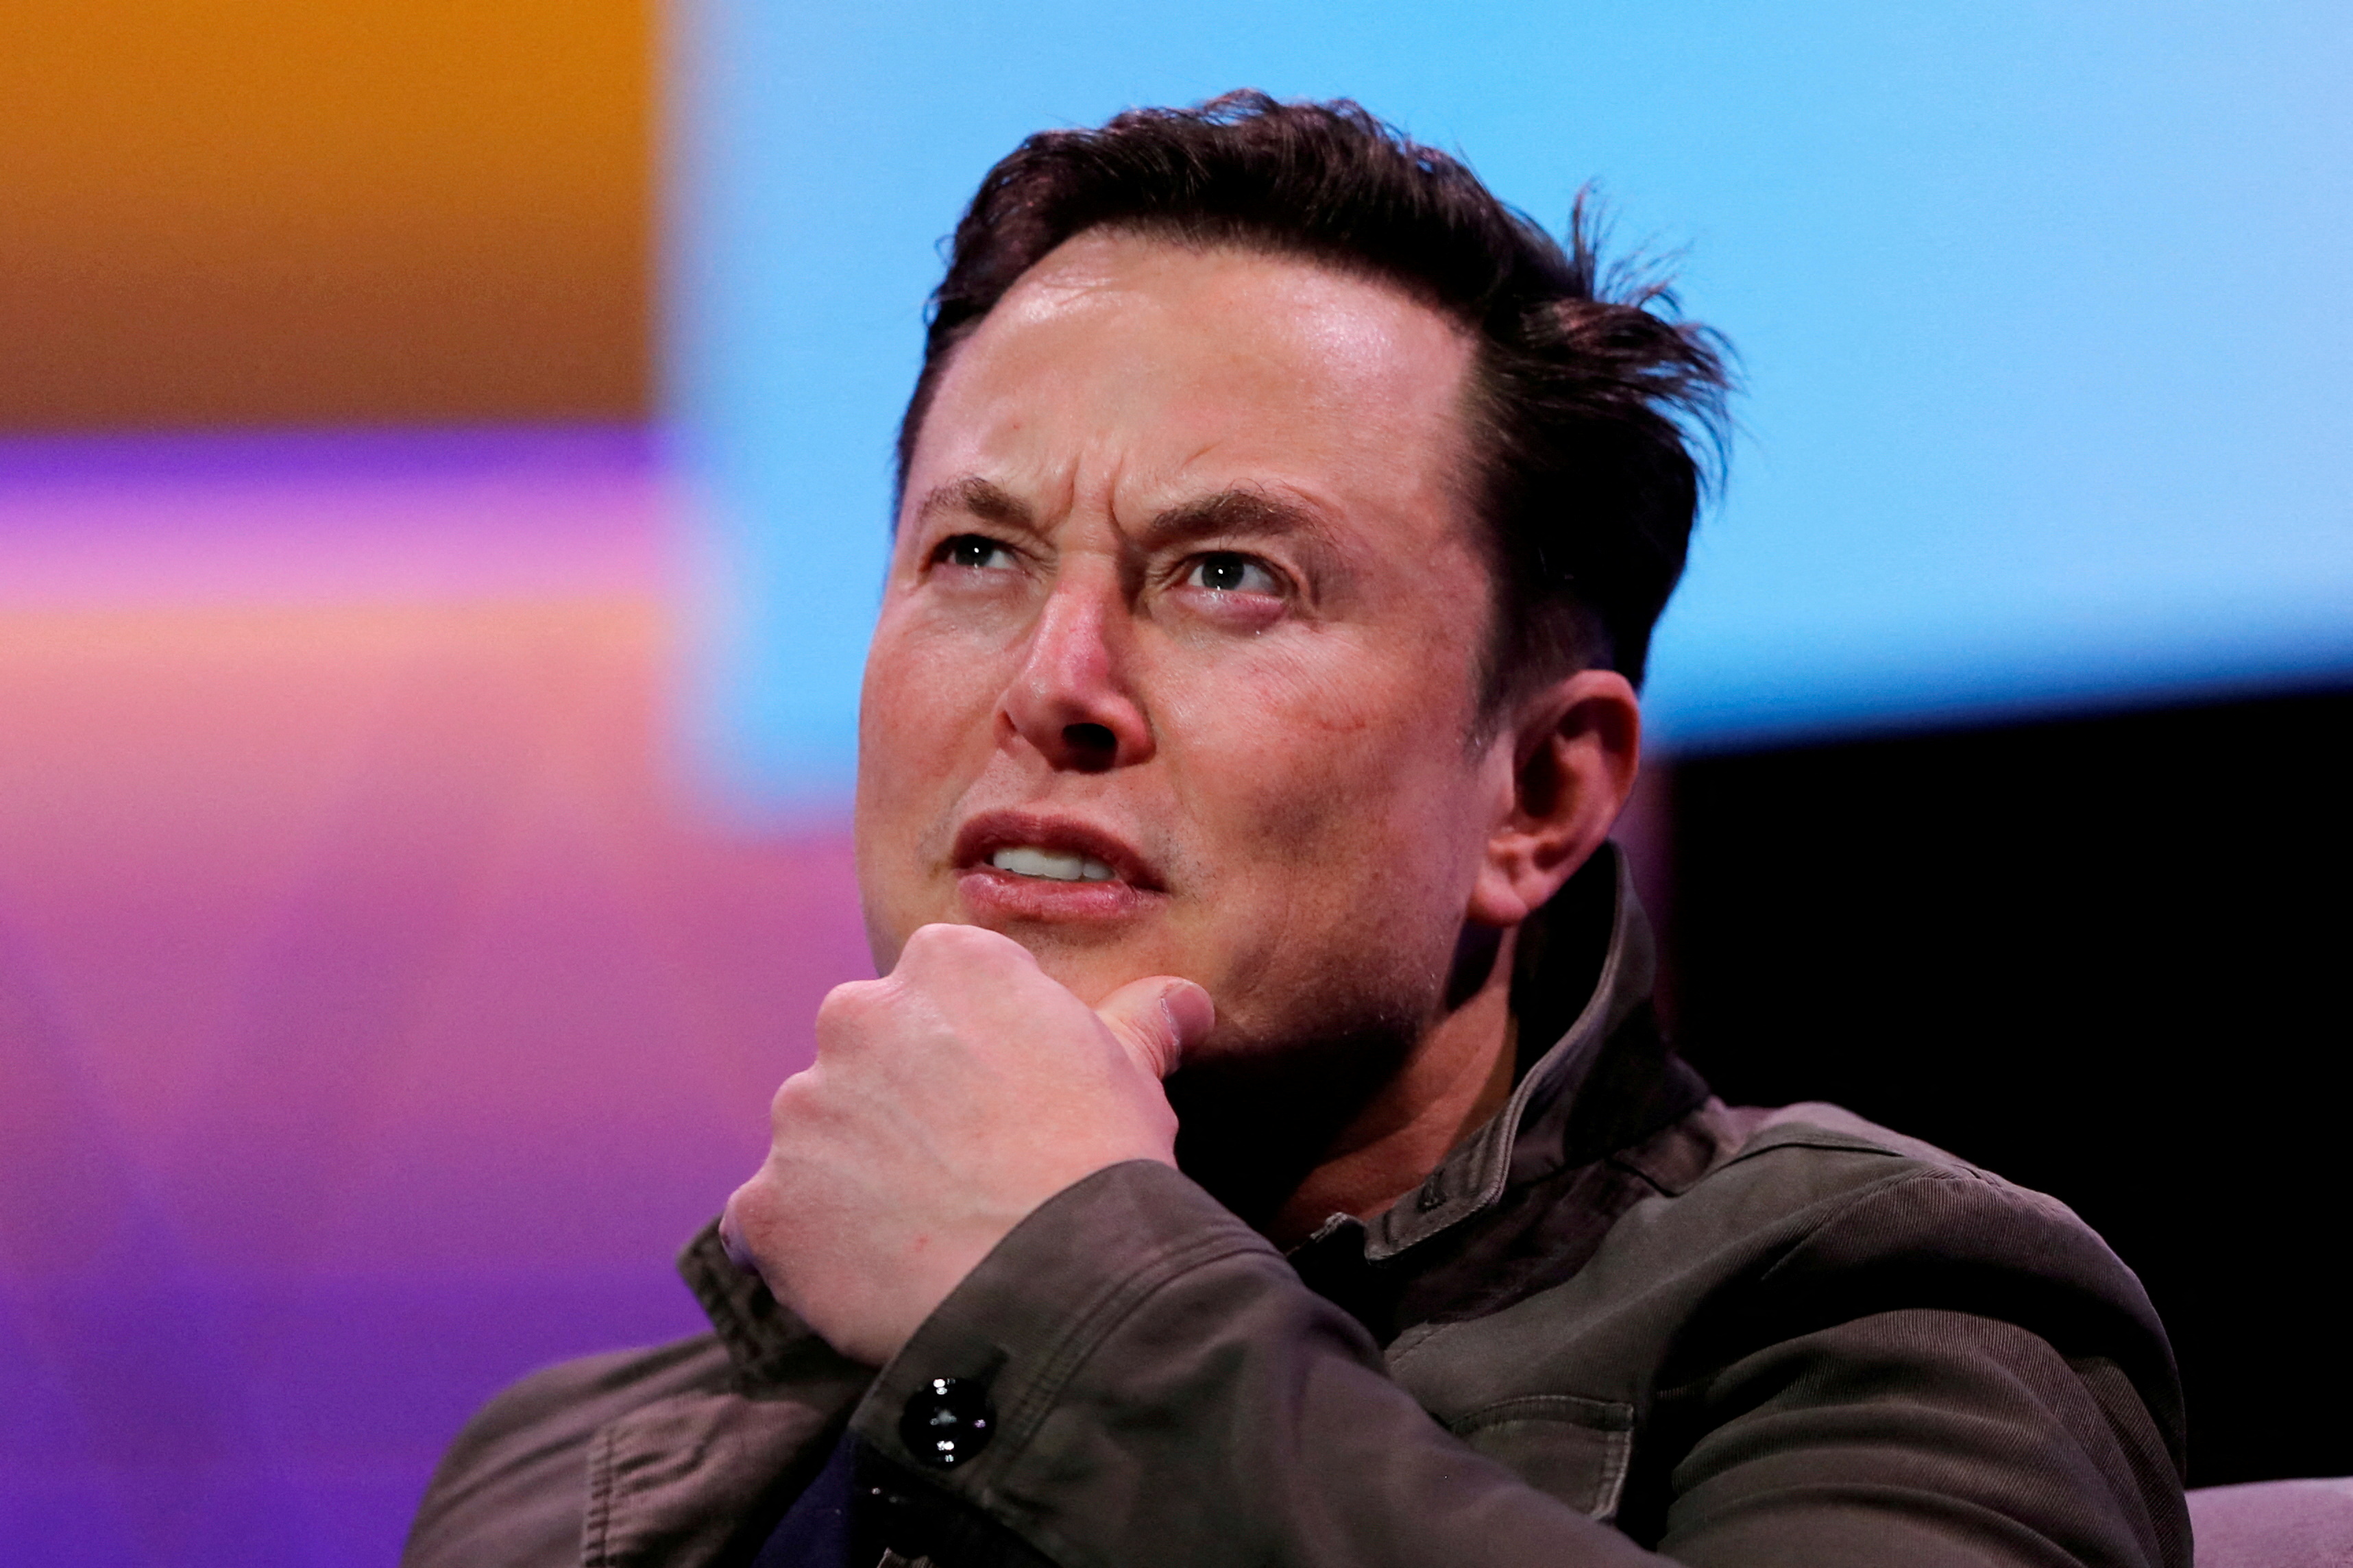 El propietario de SpaceX y CEO de Tesla, Elon Musk, en la convención de juegos E3 en Los Ángeles, California, EE. UU., 13 de junio de 2019.  REUTERS/Mike Blake//File Photo